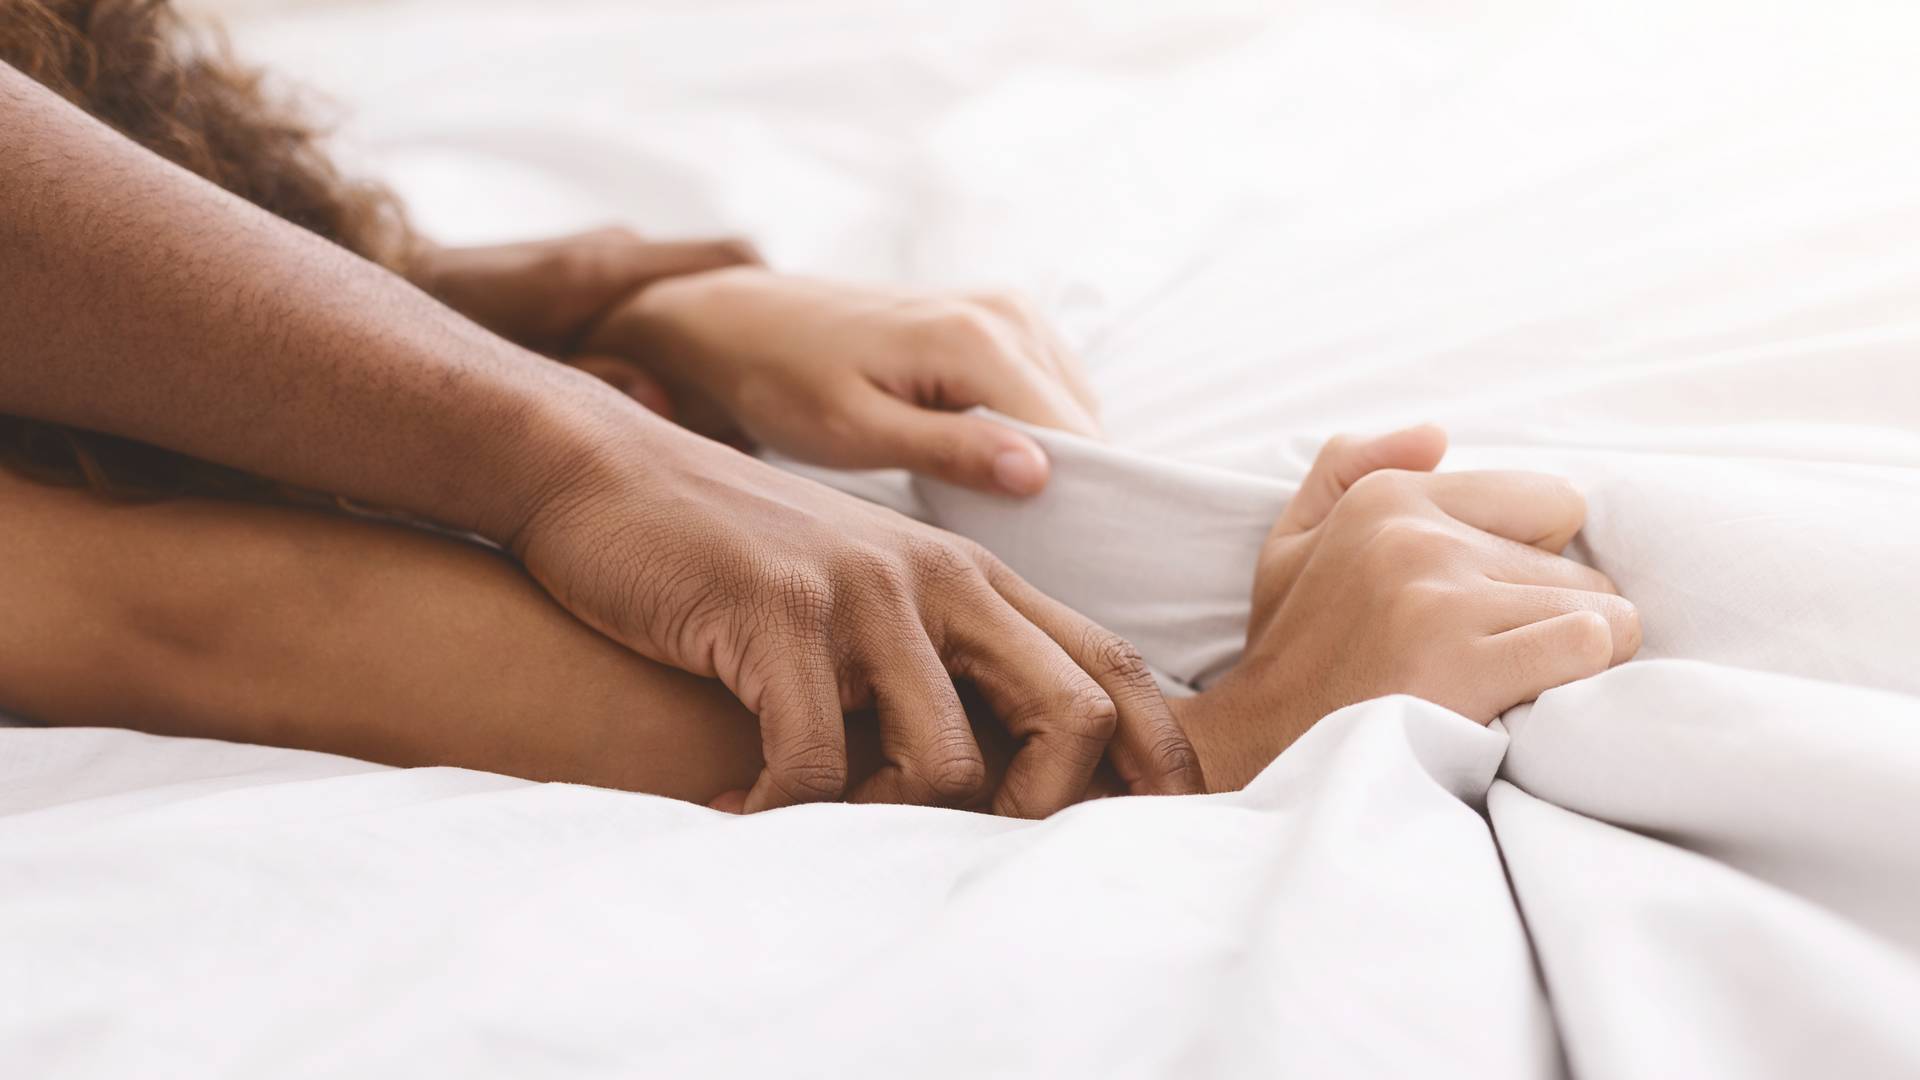 Mit szólnál, ha elárulnánk, mit tehetsz a legintenzívebb orgazmusért?